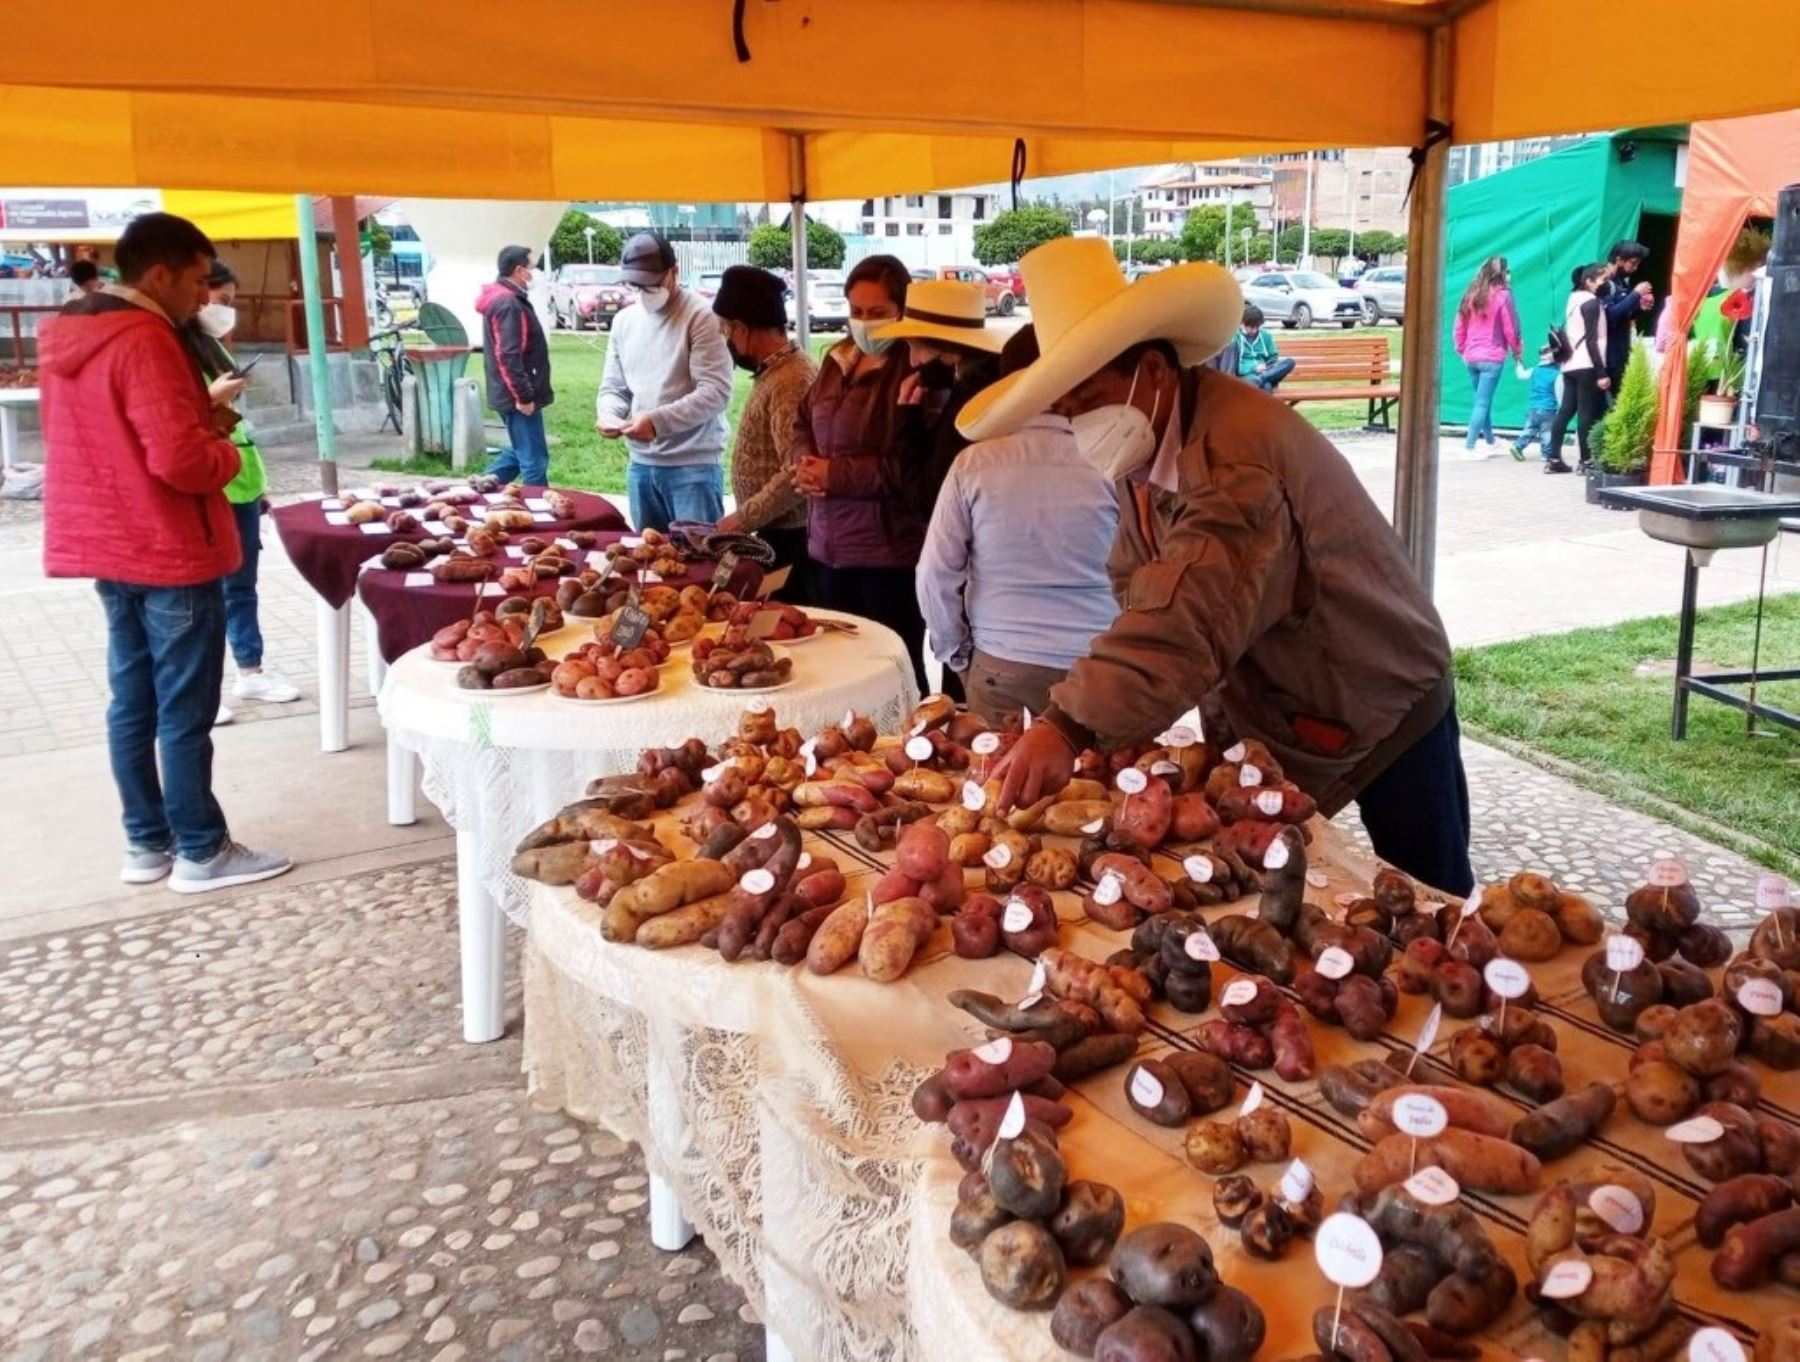 Productores de Cajamarca celebrarán el Día del Campesino con feria agropecuaria, artesanal y gastronómica. La actividad se desarrollará mañana sábado 25 y domingo 26. Foto: ANDINA/difusión.